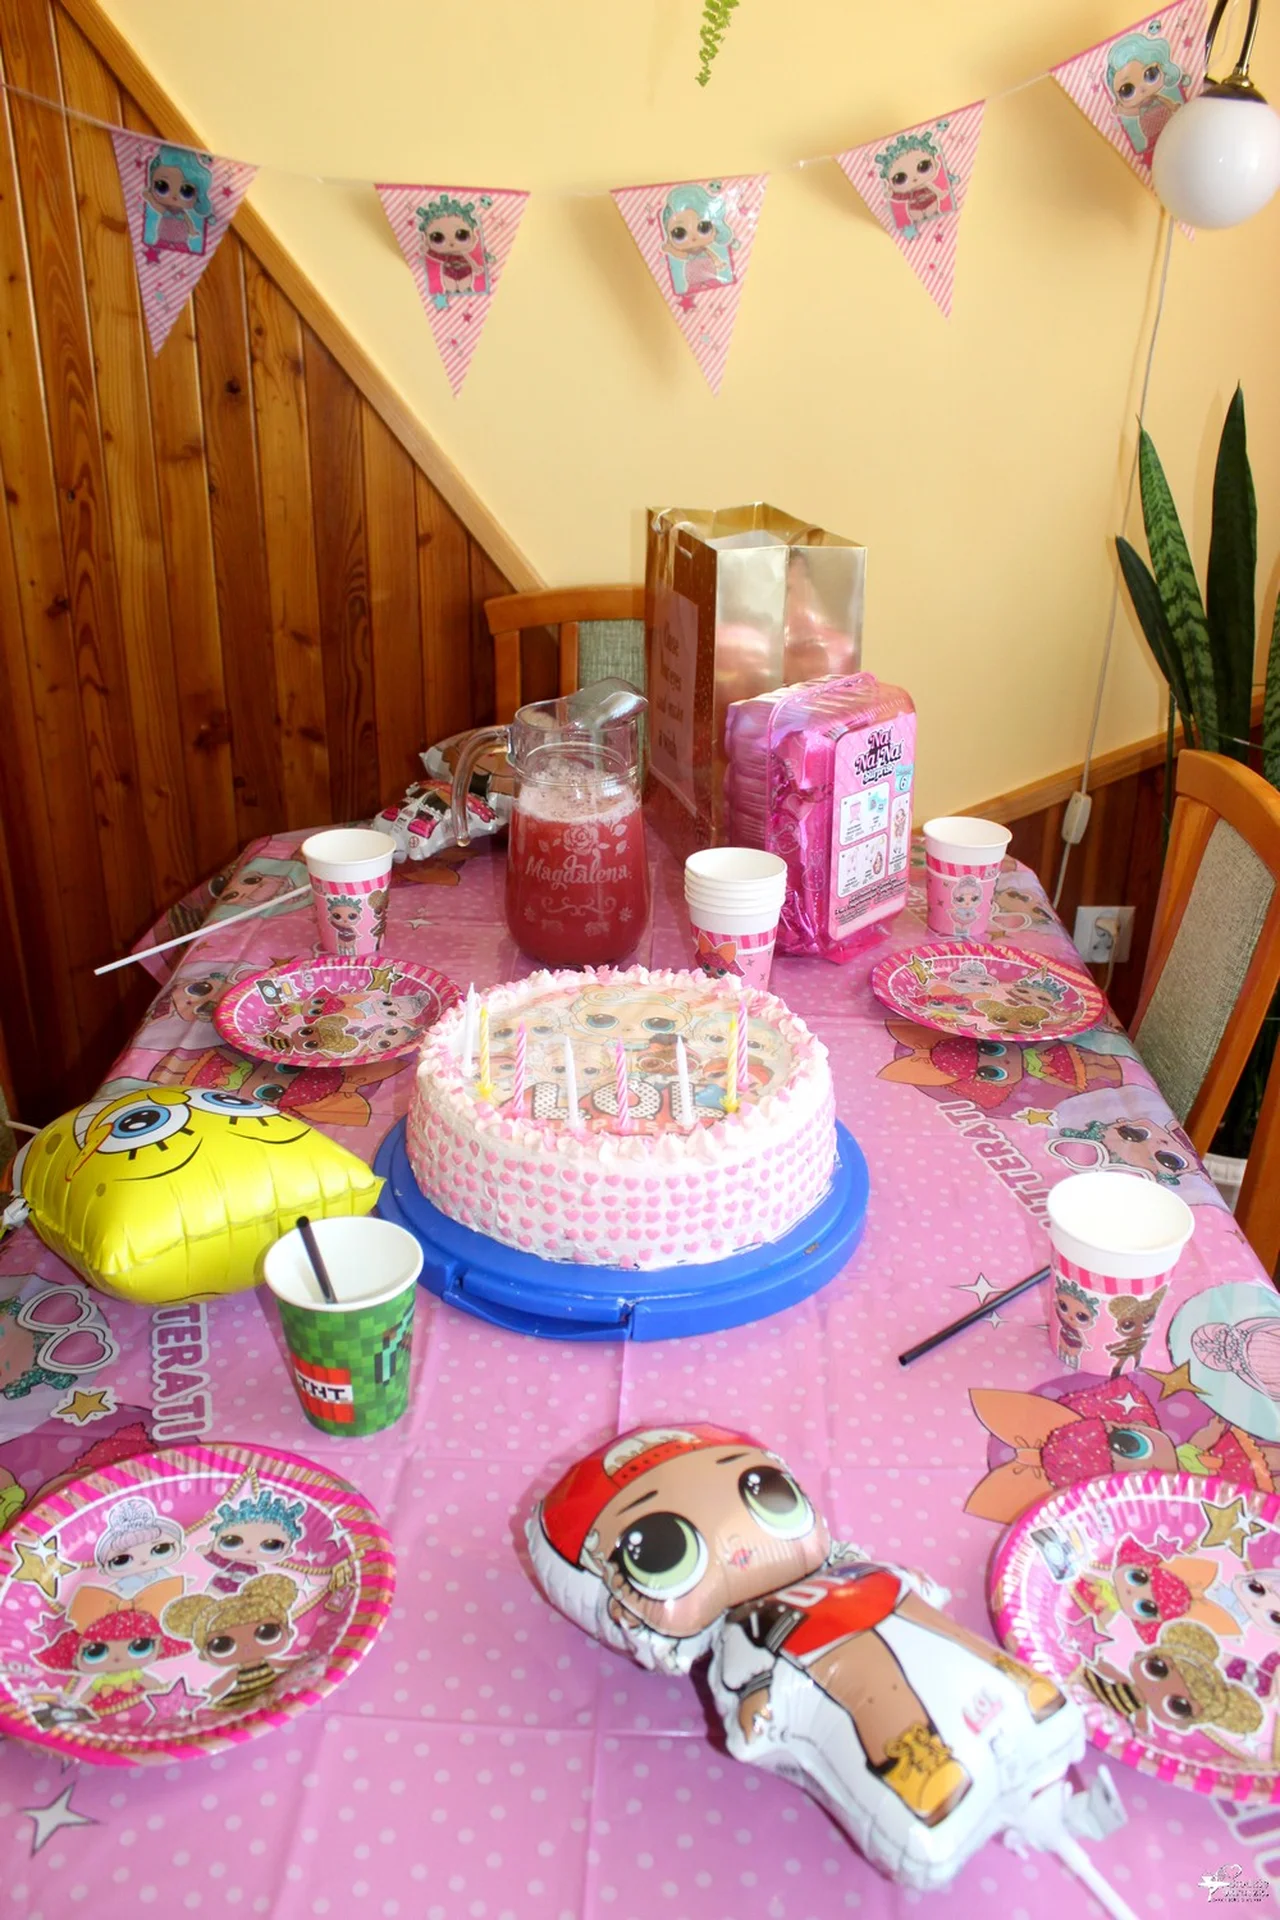 Tort śmietankowo-malinowy na 8 urodziny córeczki